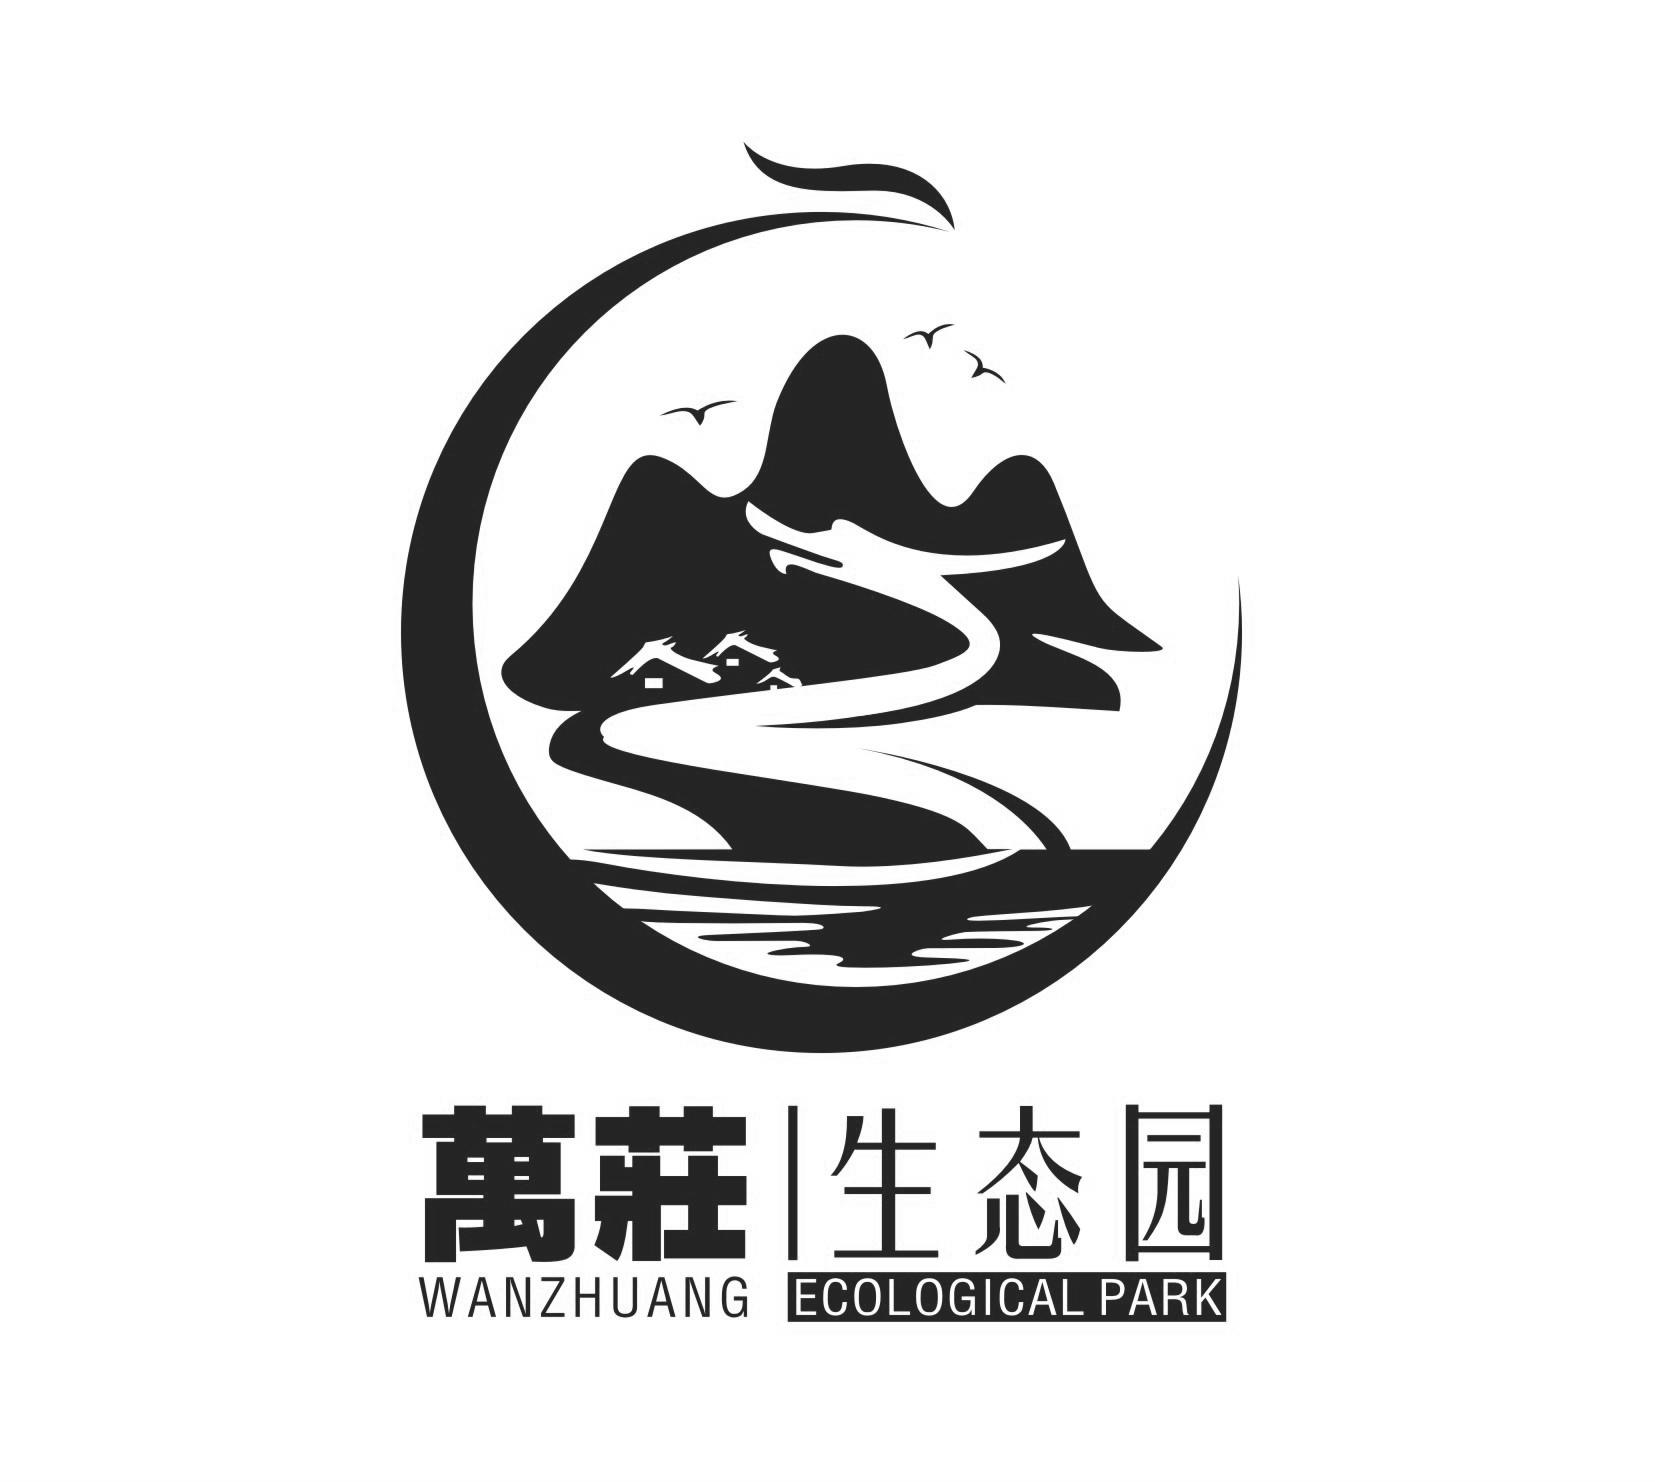 商标文字万庄生态园 wanzhuang ecological park商标注册号 47721677